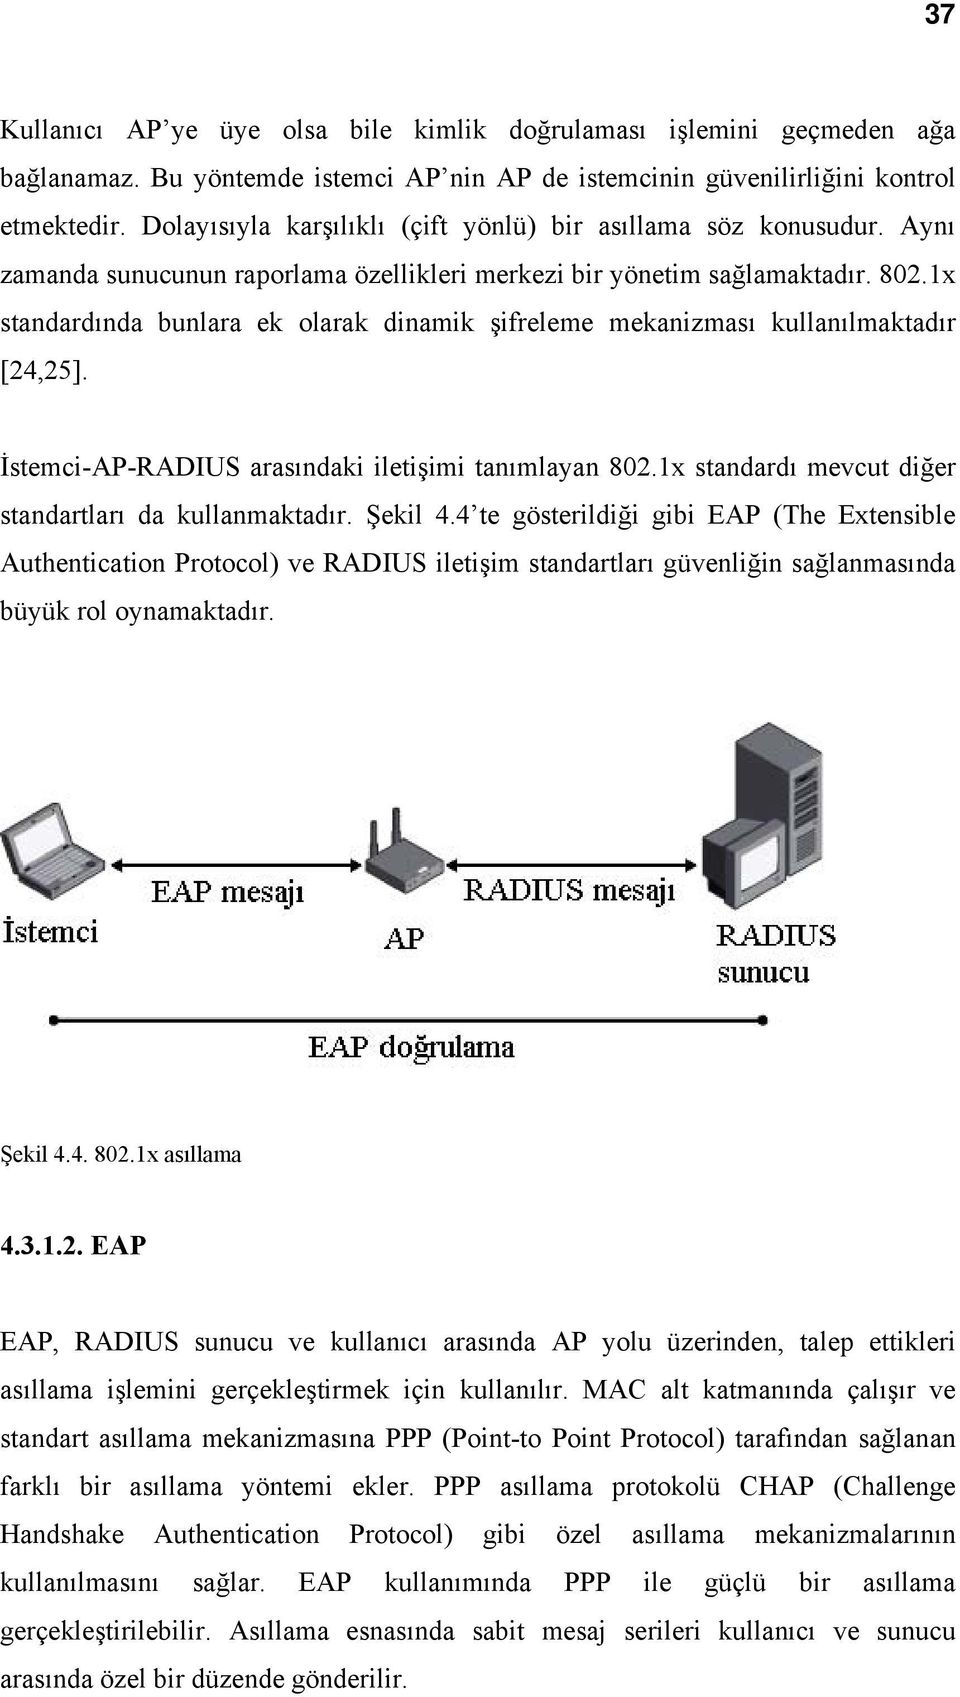 1x standardında bunlara ek olarak dinamik şifreleme mekanizması kullanılmaktadır [24,25]. İstemci-AP-RADIUS arasındaki iletişimi tanımlayan 802.